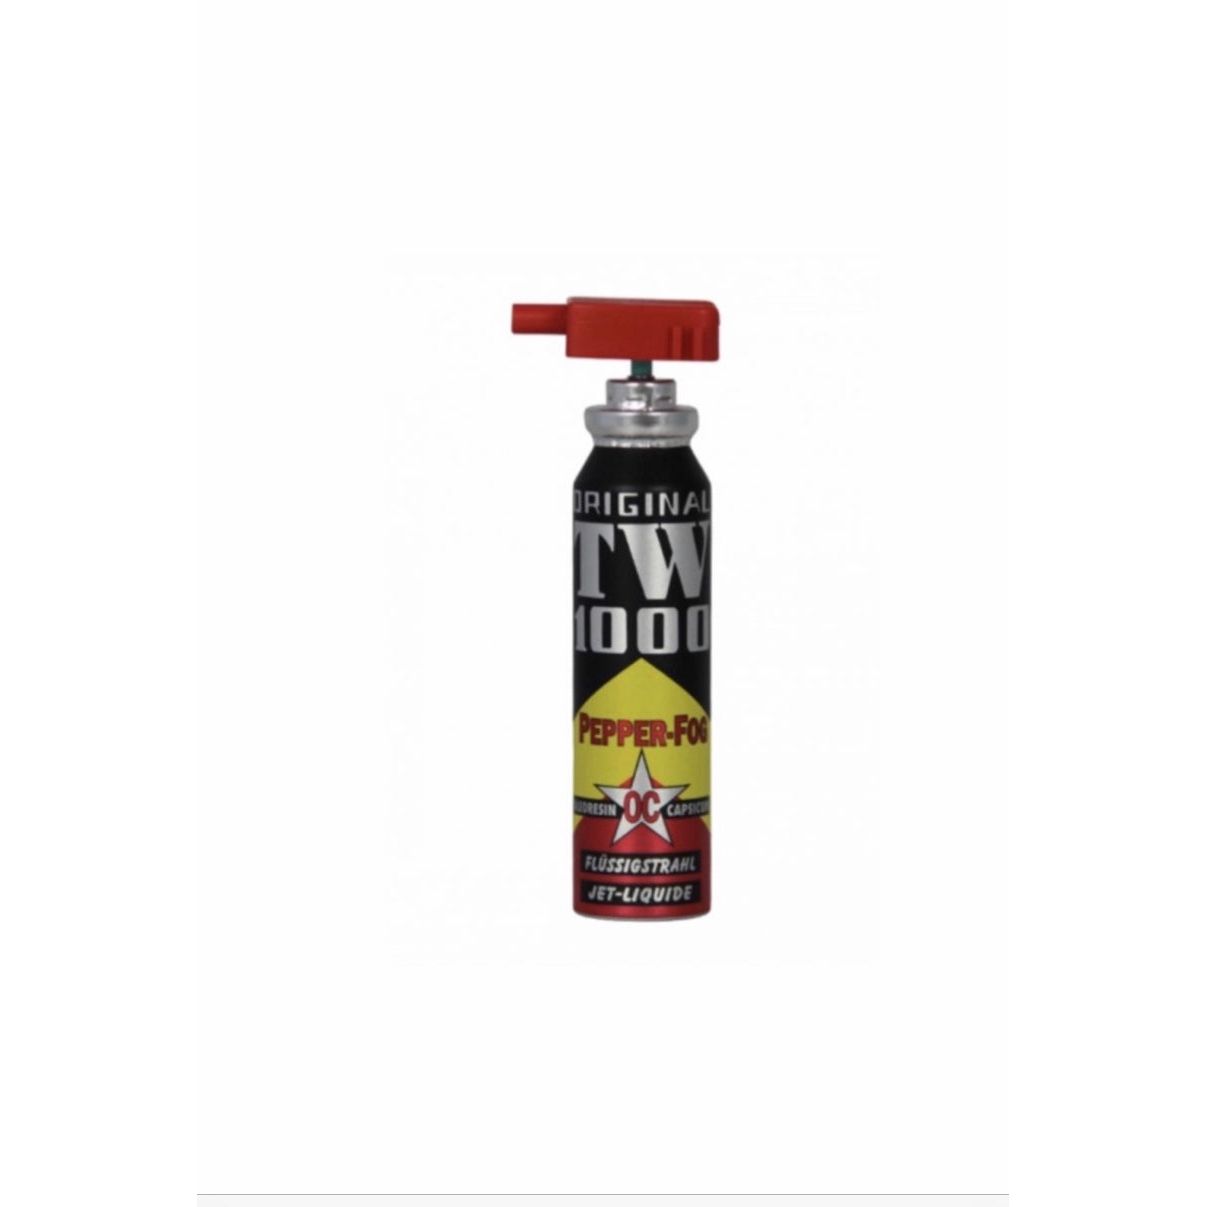 Cartouche de recharge pour spray au poivre TW1000 RSG 4, 30 ml